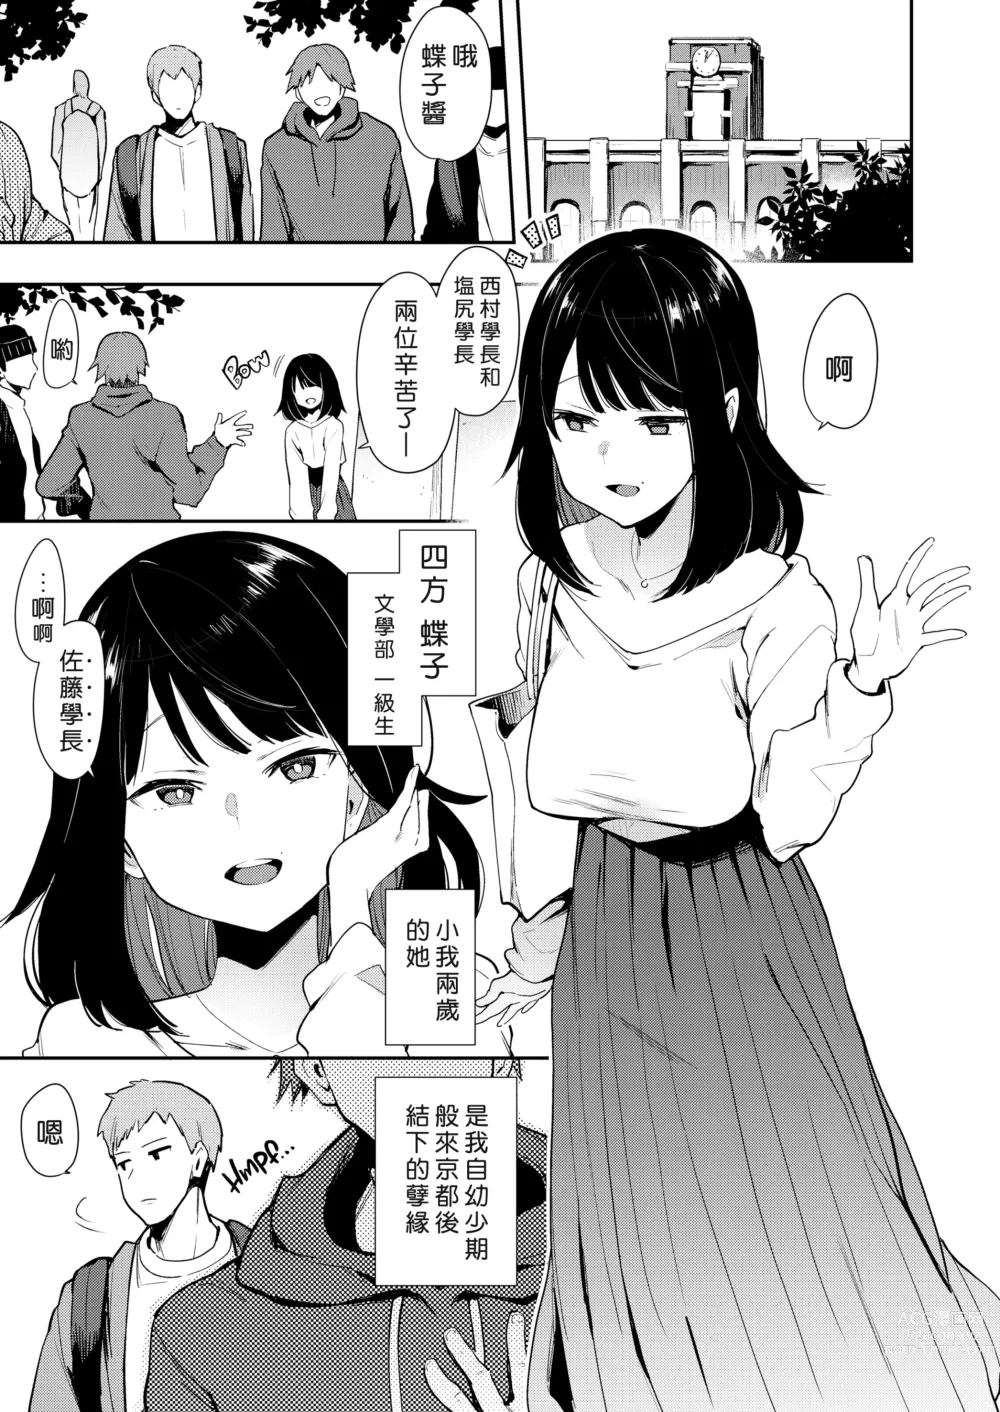 Page 5 of doujinshi Chouko I~V